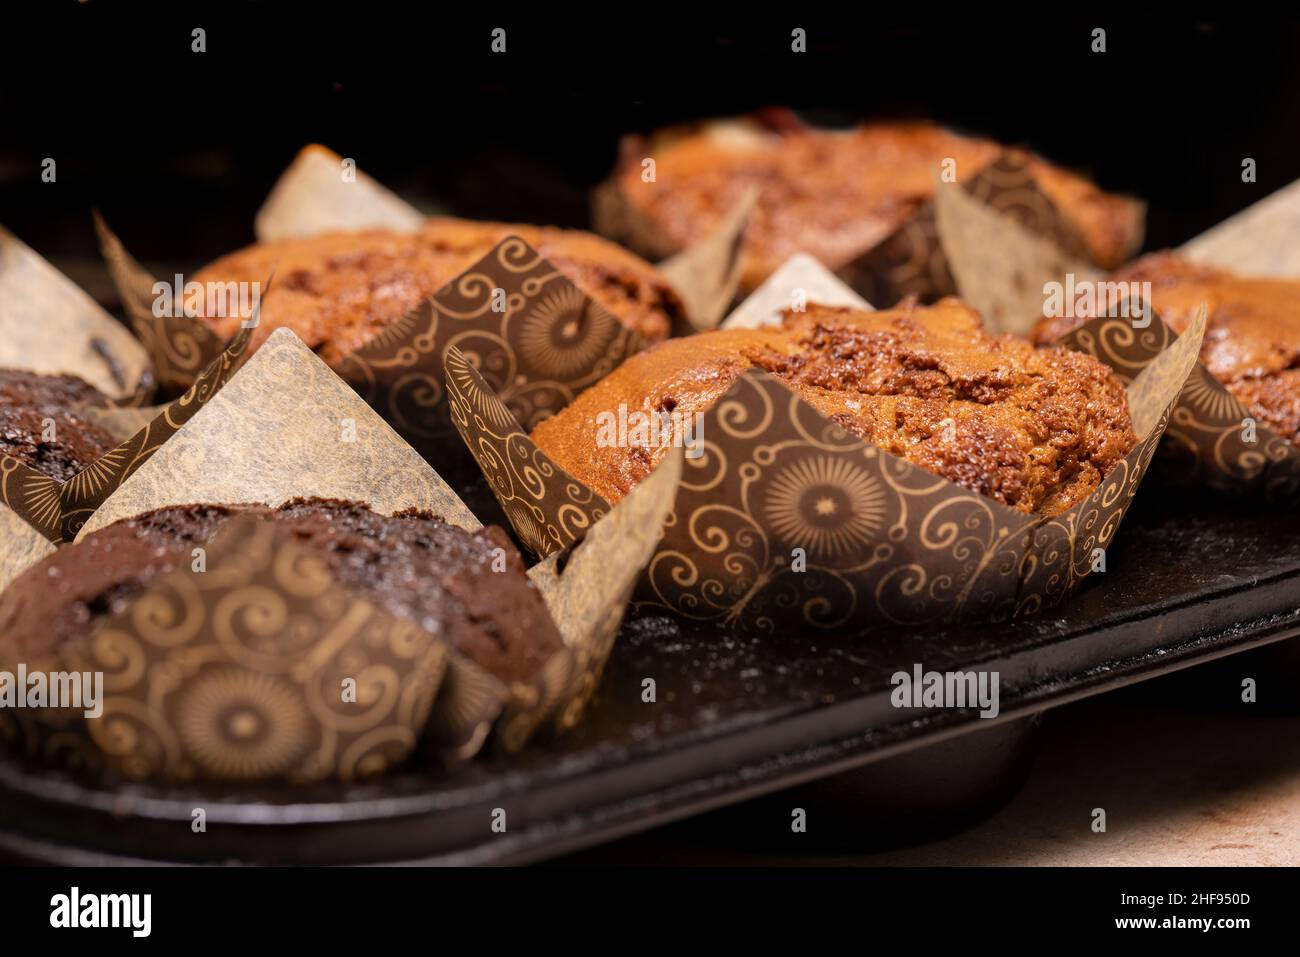 Muffins au chocolat et à la vanille emballés dans un café local Banque D'Images